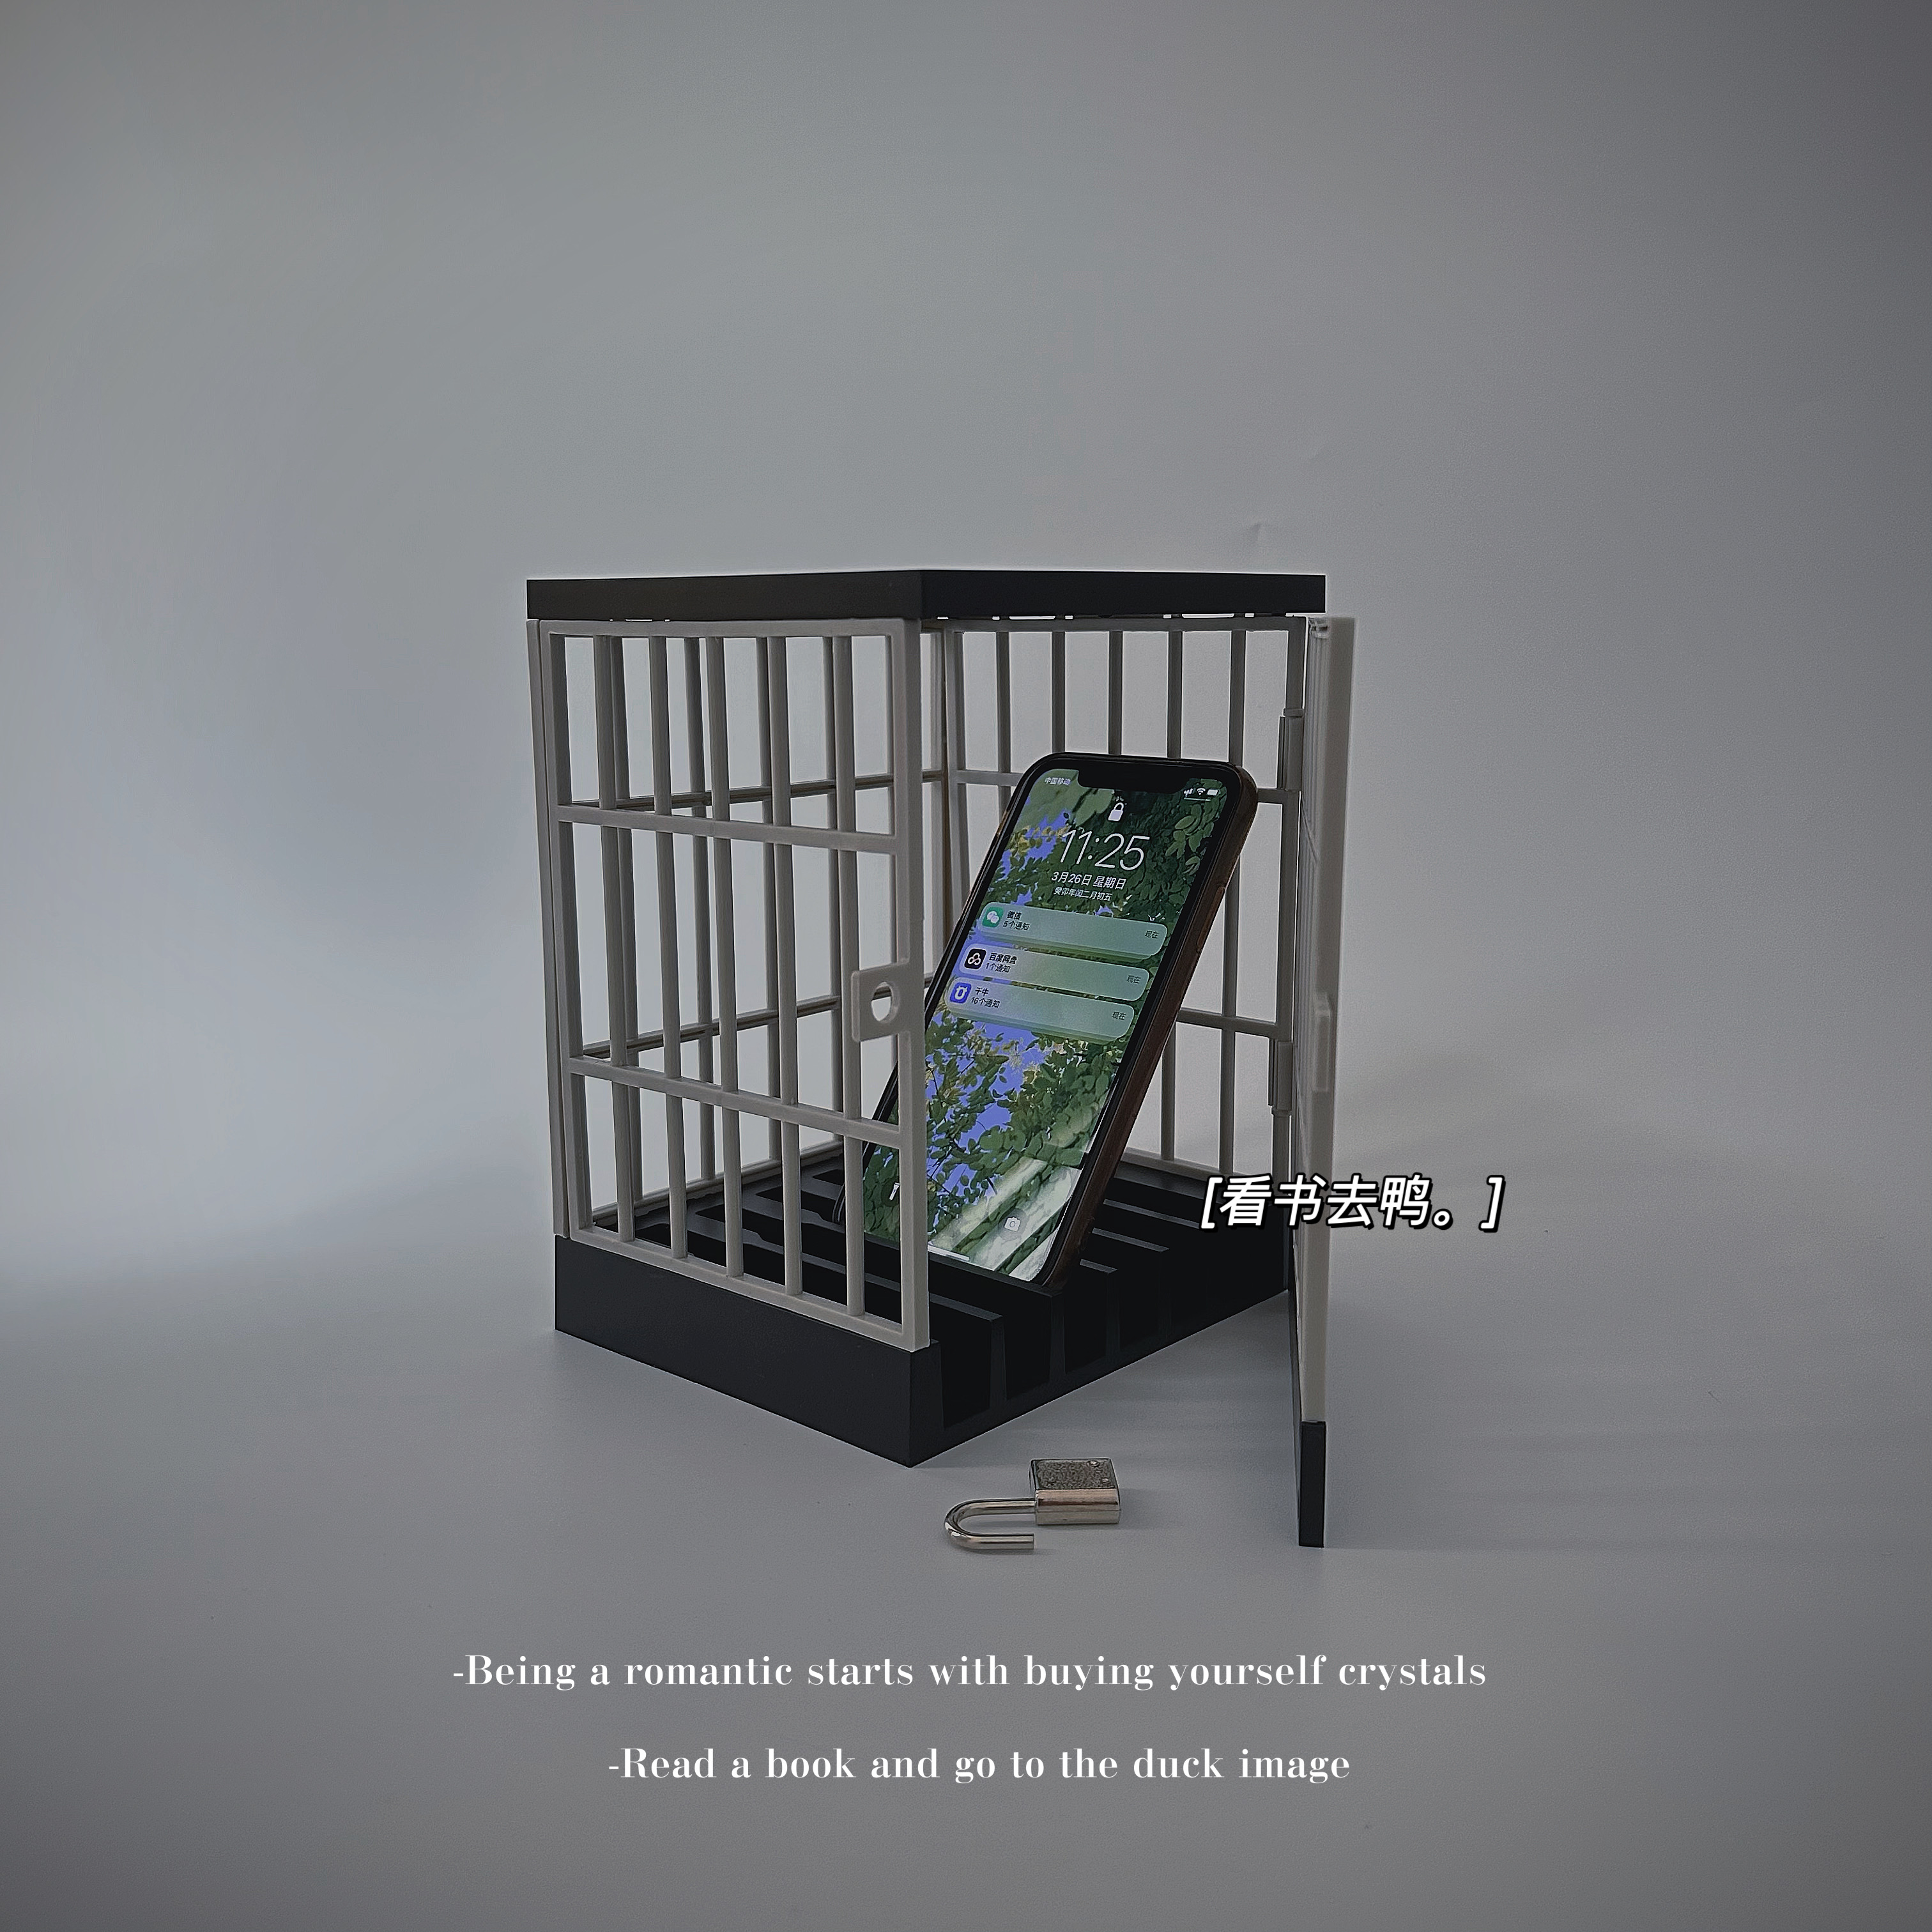 「无聊了 把手机锁进笼子里」迷你牢笼手机监狱自律神器摆件礼物